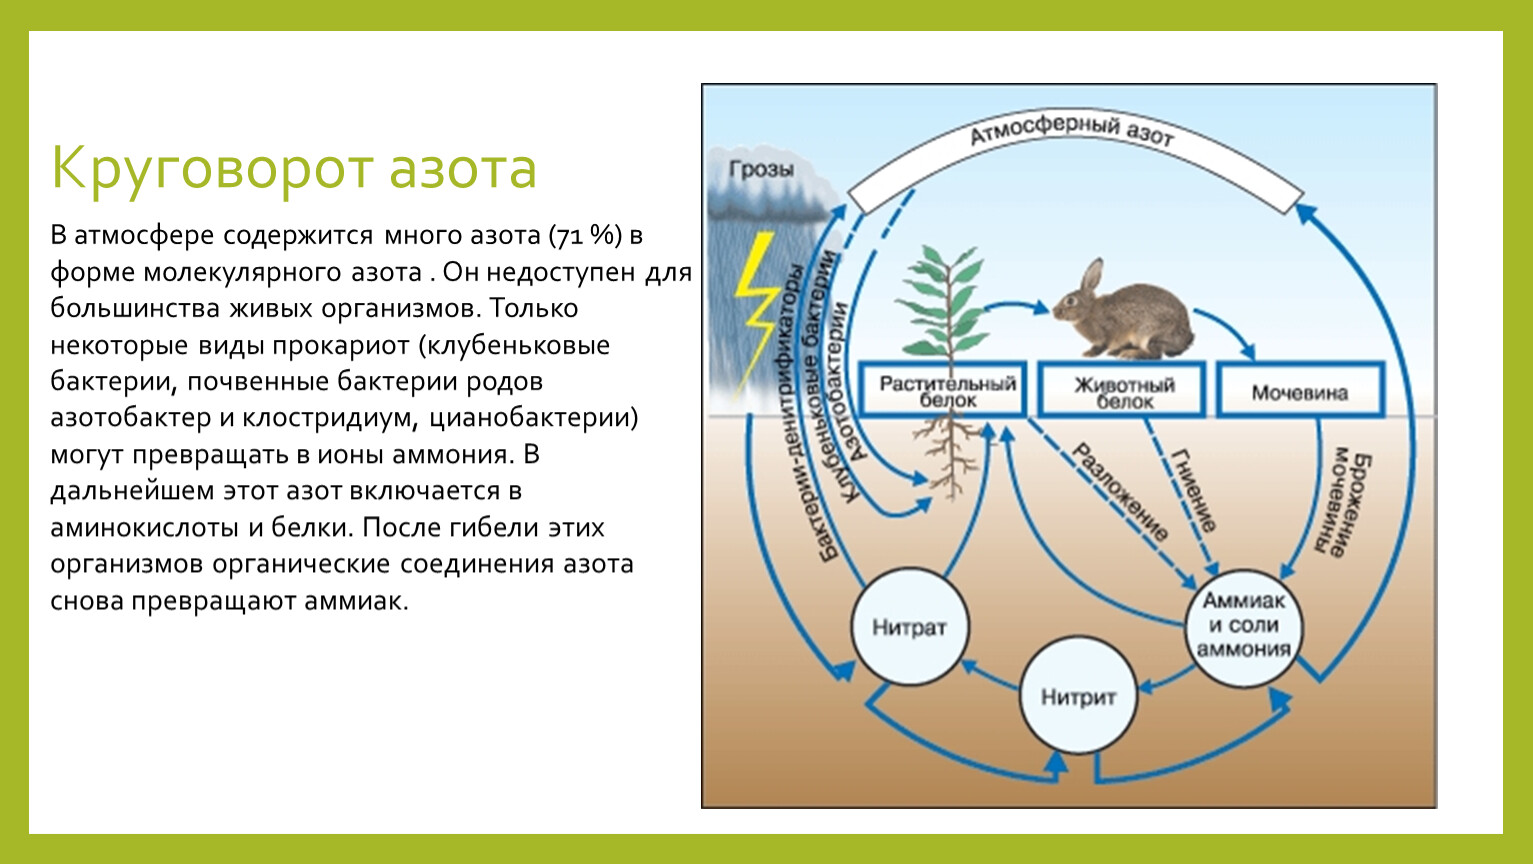 Грибы включаясь в круговорот веществ в биосфере. Схема биогеохимического круговорота в природе. Биологический цикл азота. Биогеохимический цикл азота схема. Круговорот азота в биосфере.